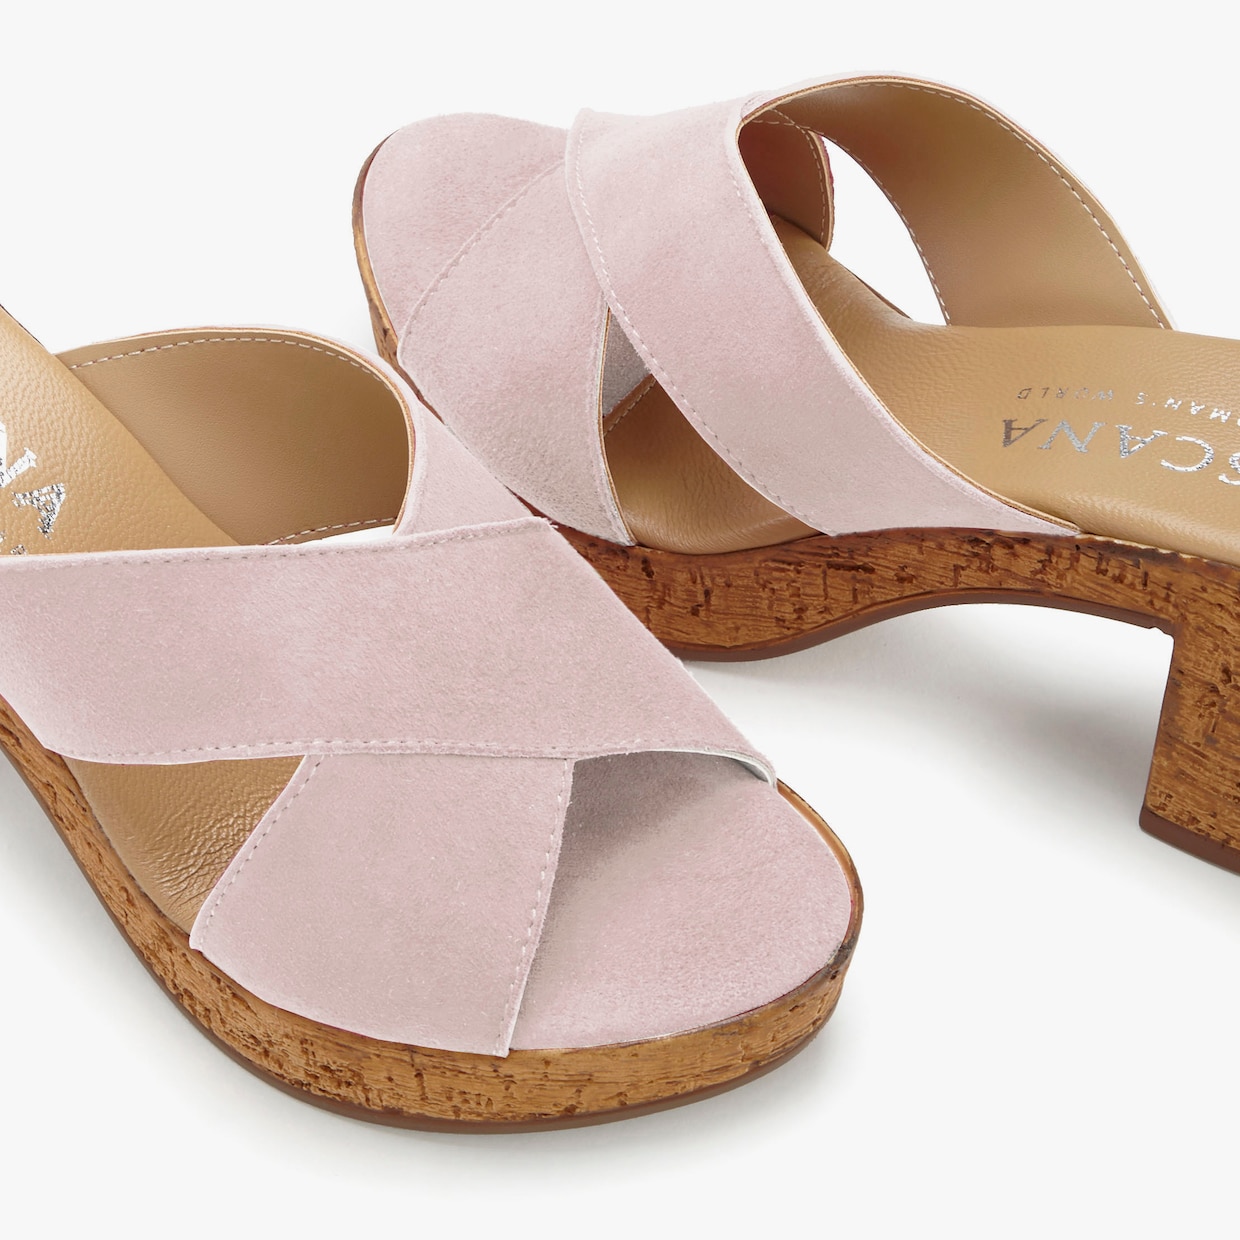 LASCANA slippers - roze